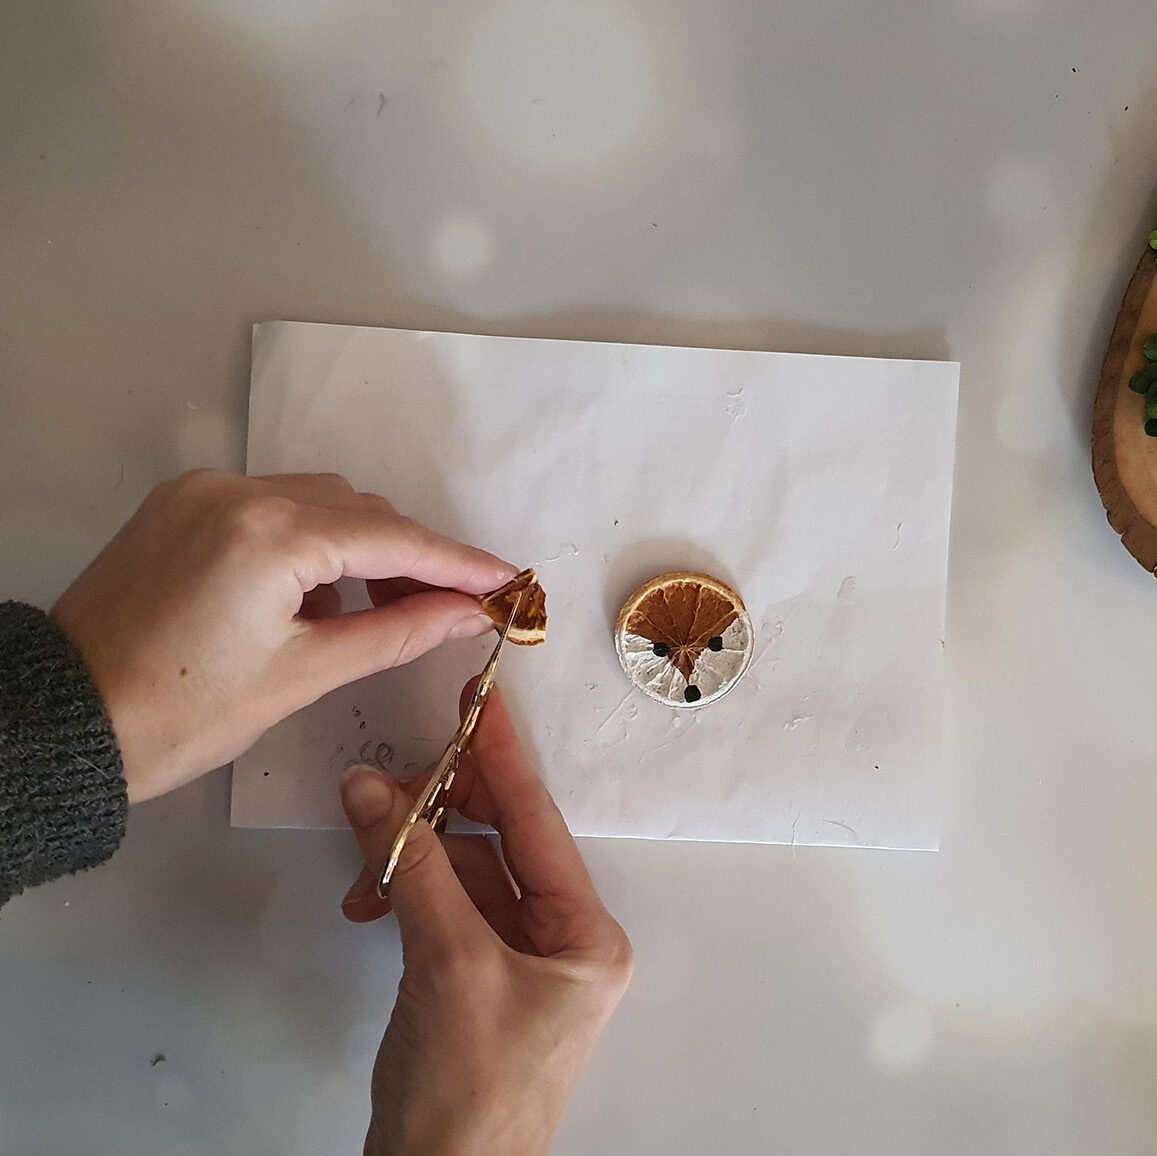 DIY Fuchs-Anhänger aus getrockneten Orangenscheiben selber machen Schritt 3: Orangenscheibe zerschneiden